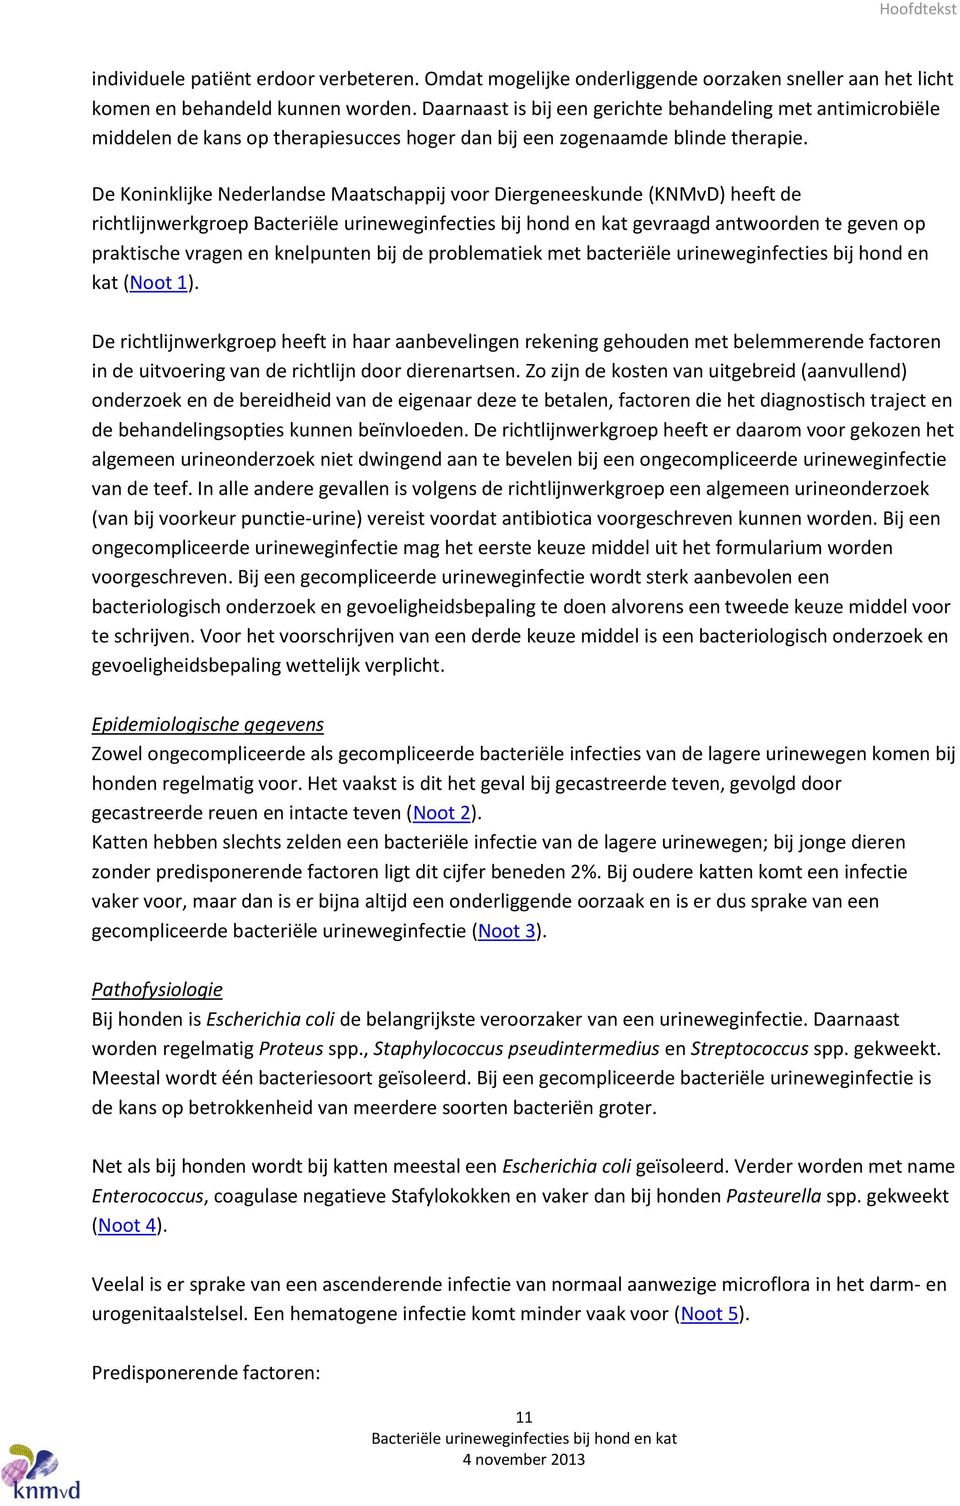 De Koninklijke Nederlandse Maatschappij voor Diergeneeskunde (KNMvD) heeft de richtlijnwerkgroep gevraagd antwoorden te geven op praktische vragen en knelpunten bij de problematiek met bacteriële